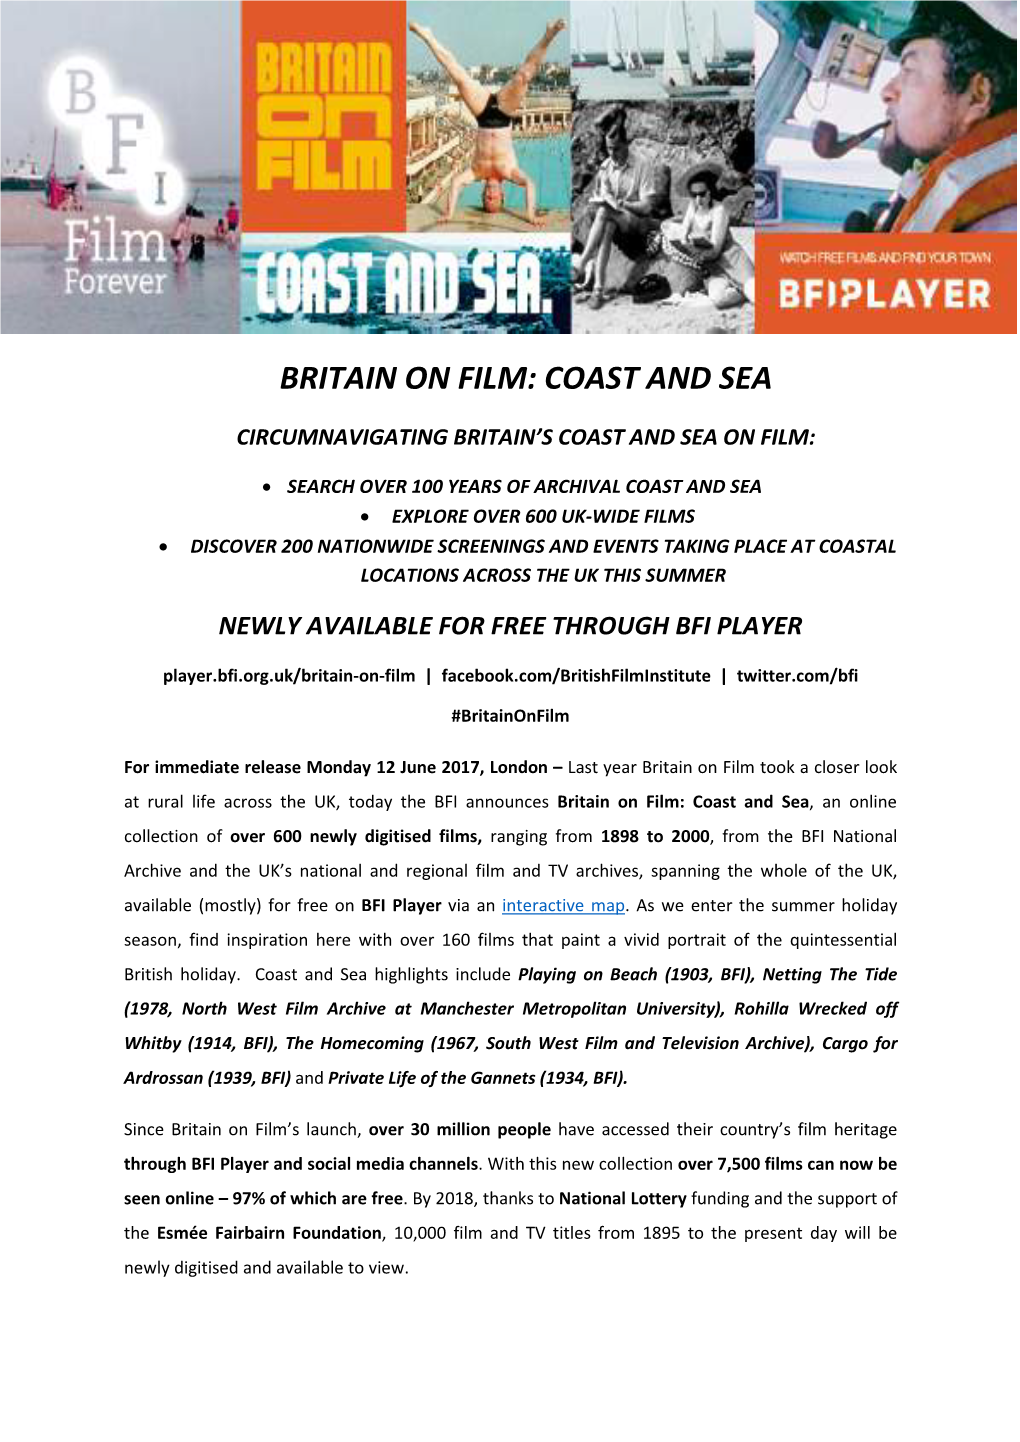 Britain on Film: Coast and Sea